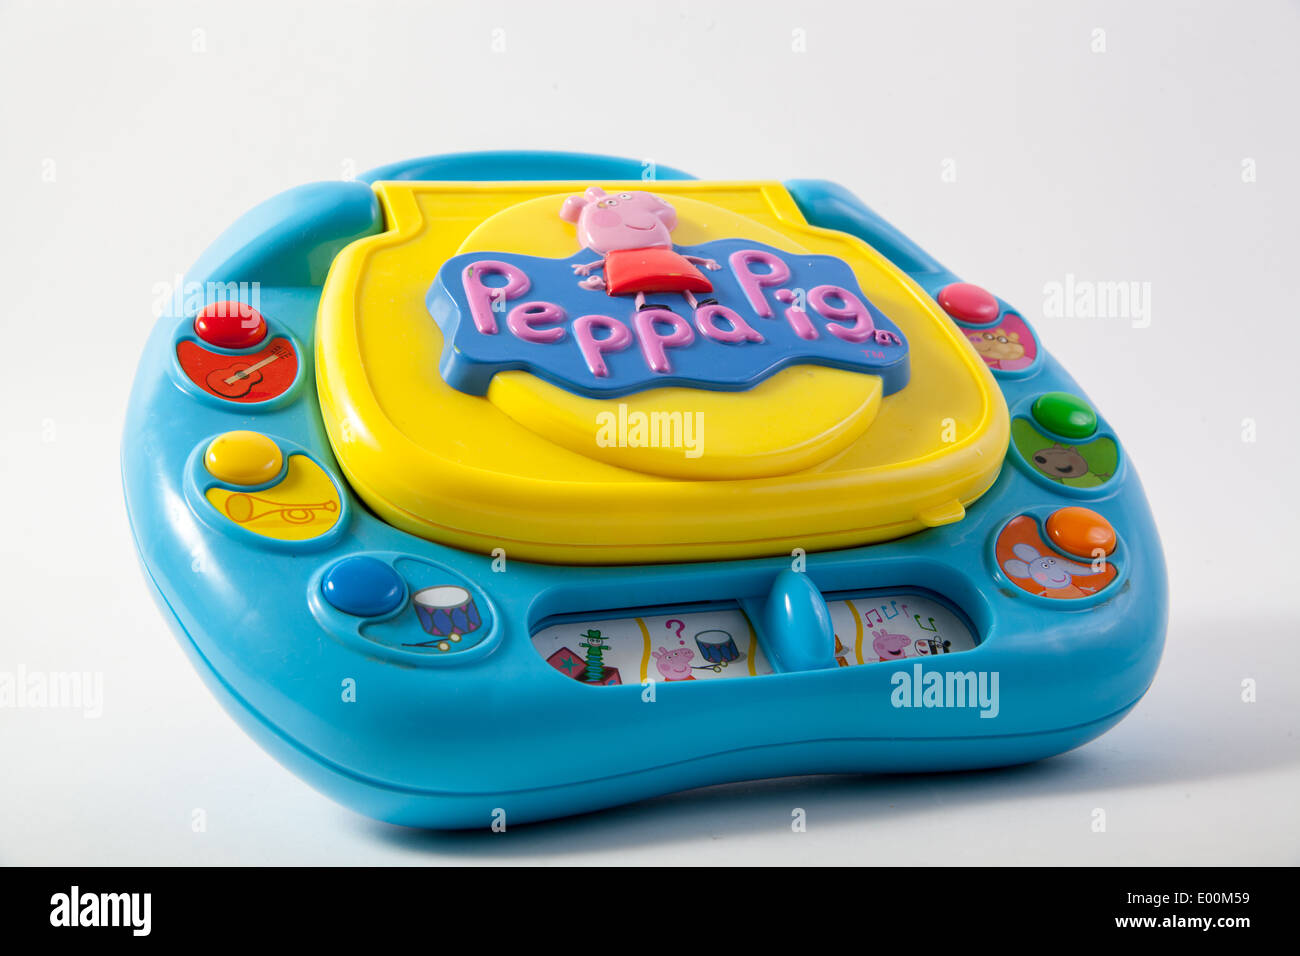 Le savez bien marque Peppa Pig sur un tout-petit enfant portable bleu et jaune qui joue de la musique, s'allume et a des jeux sur elle. Banque D'Images